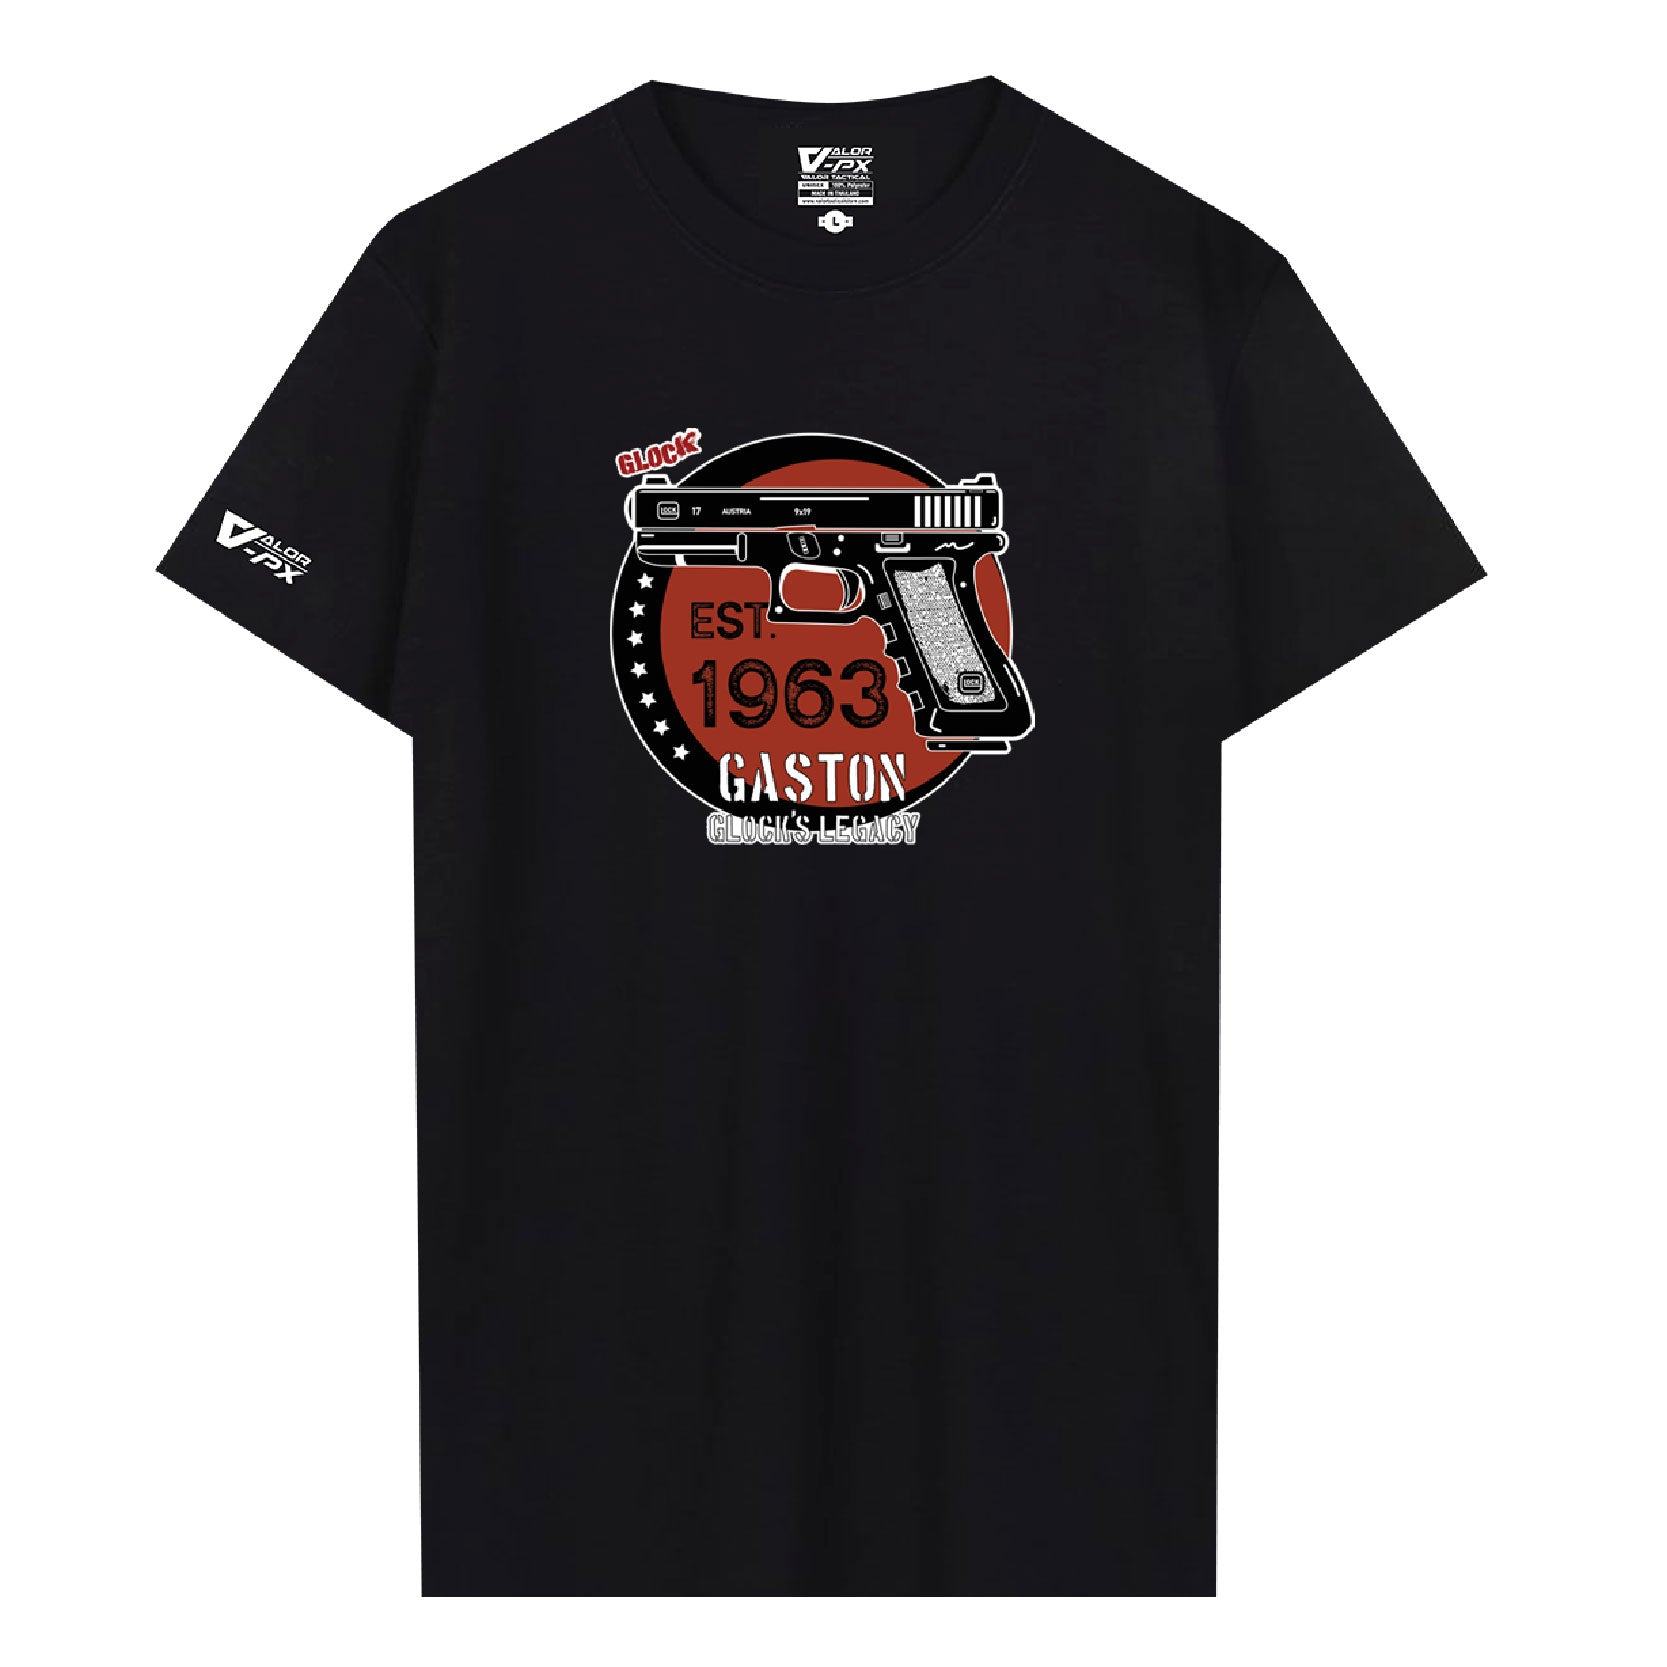 [ซื้อ 1 แถม 1] Valor PX Gaston Glock's Legacy T-Shirt